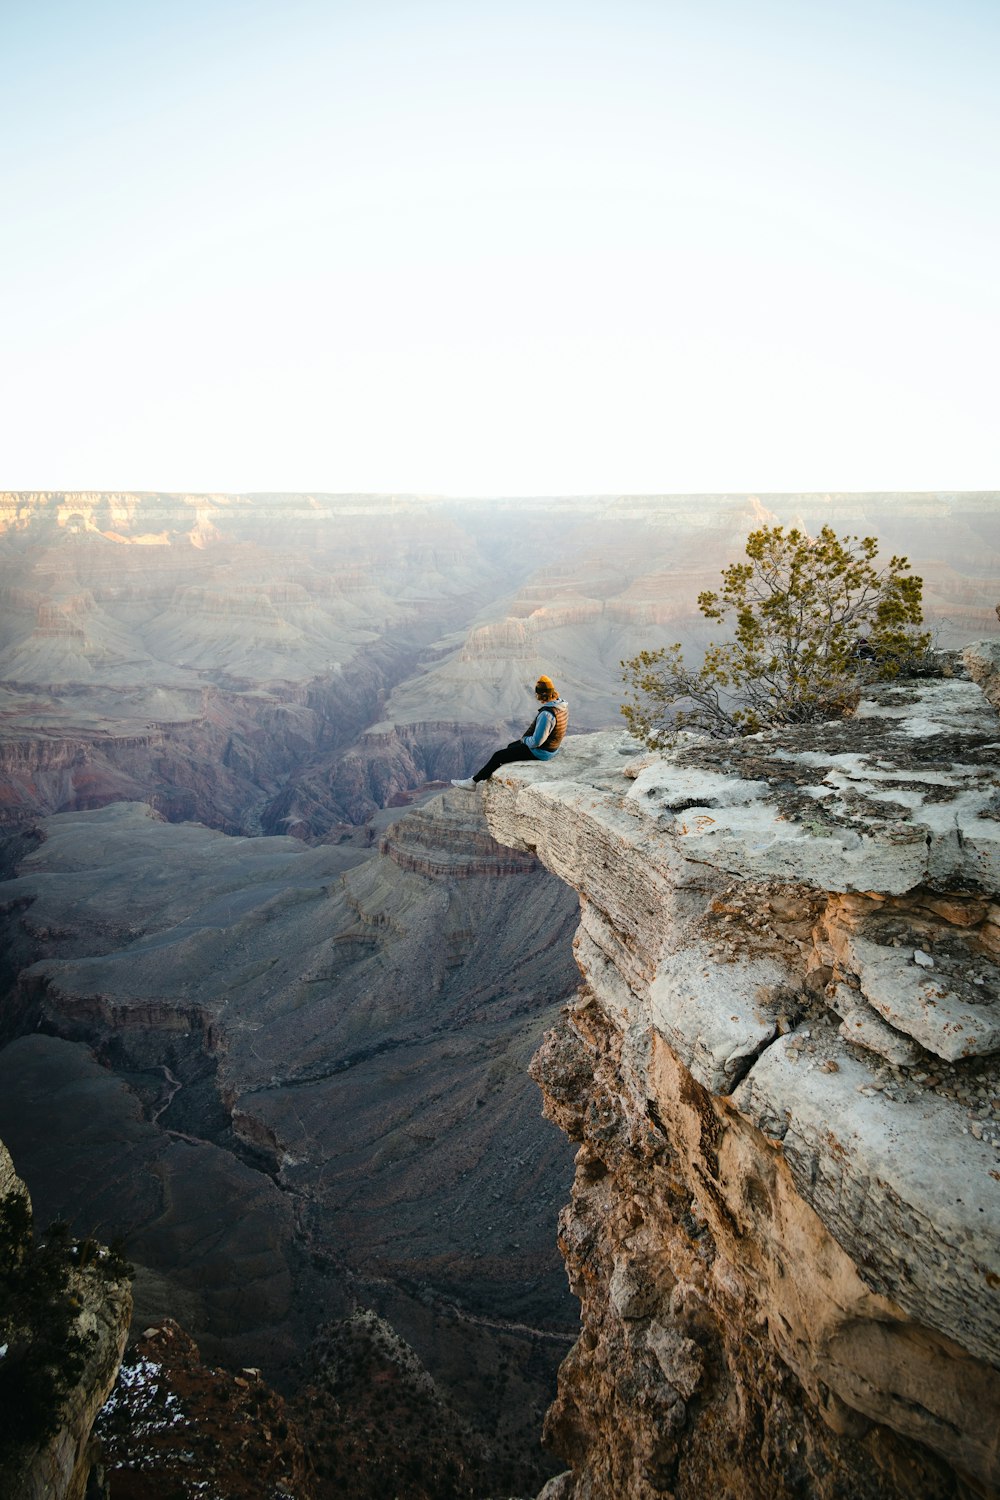 Un homme assis au sommet d’une falaise surplombant un canyon